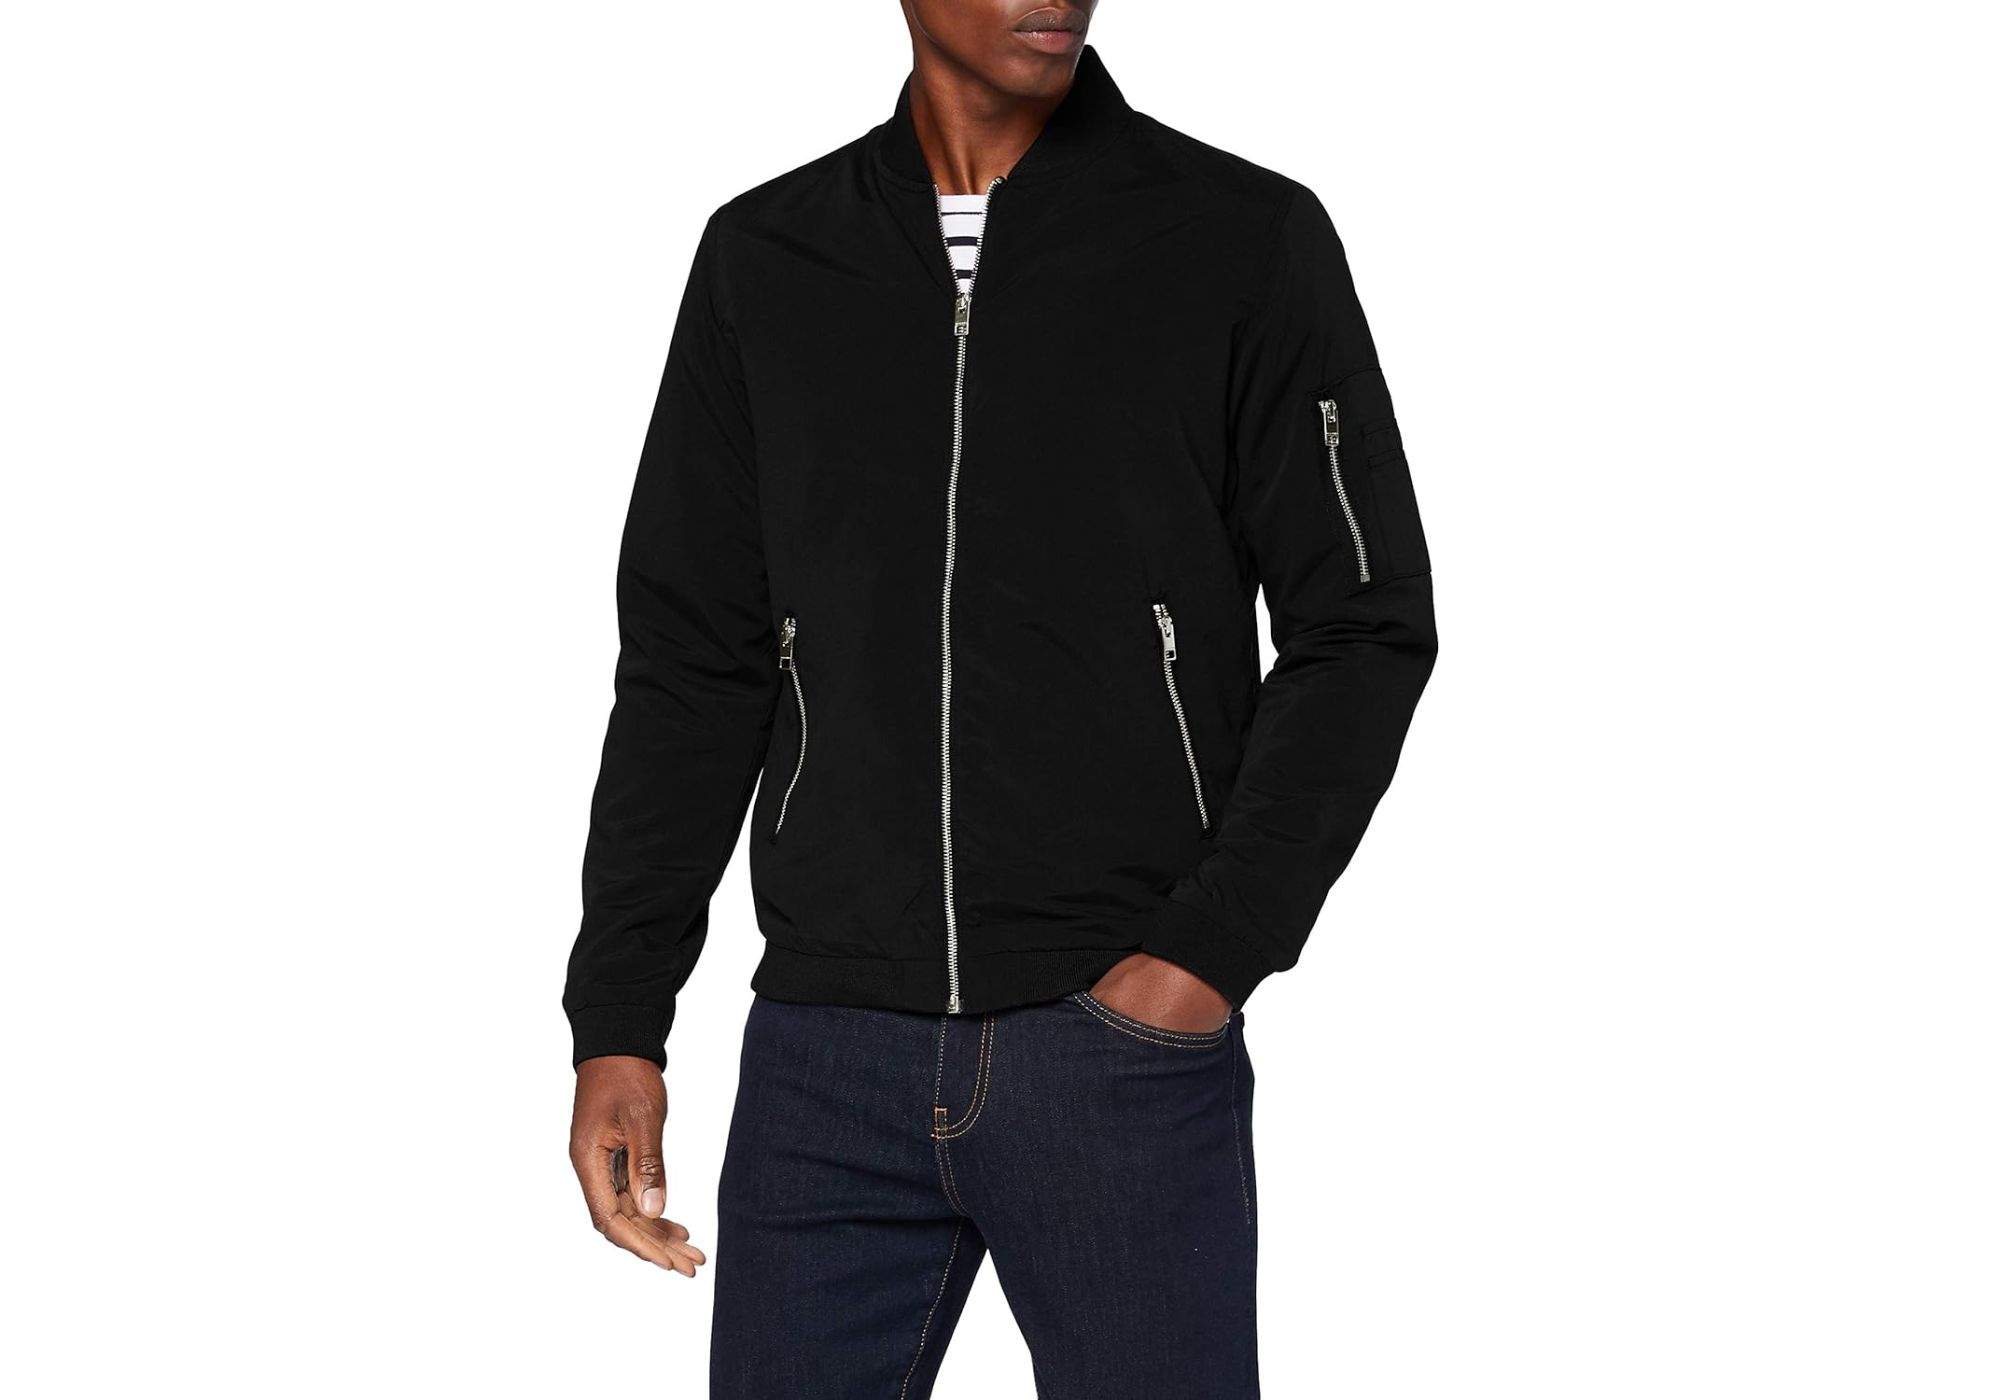 Nos encanta el look que te puedes montar con esta chaqueta bómber JACK & JONES por menos de 30€ en Amazon